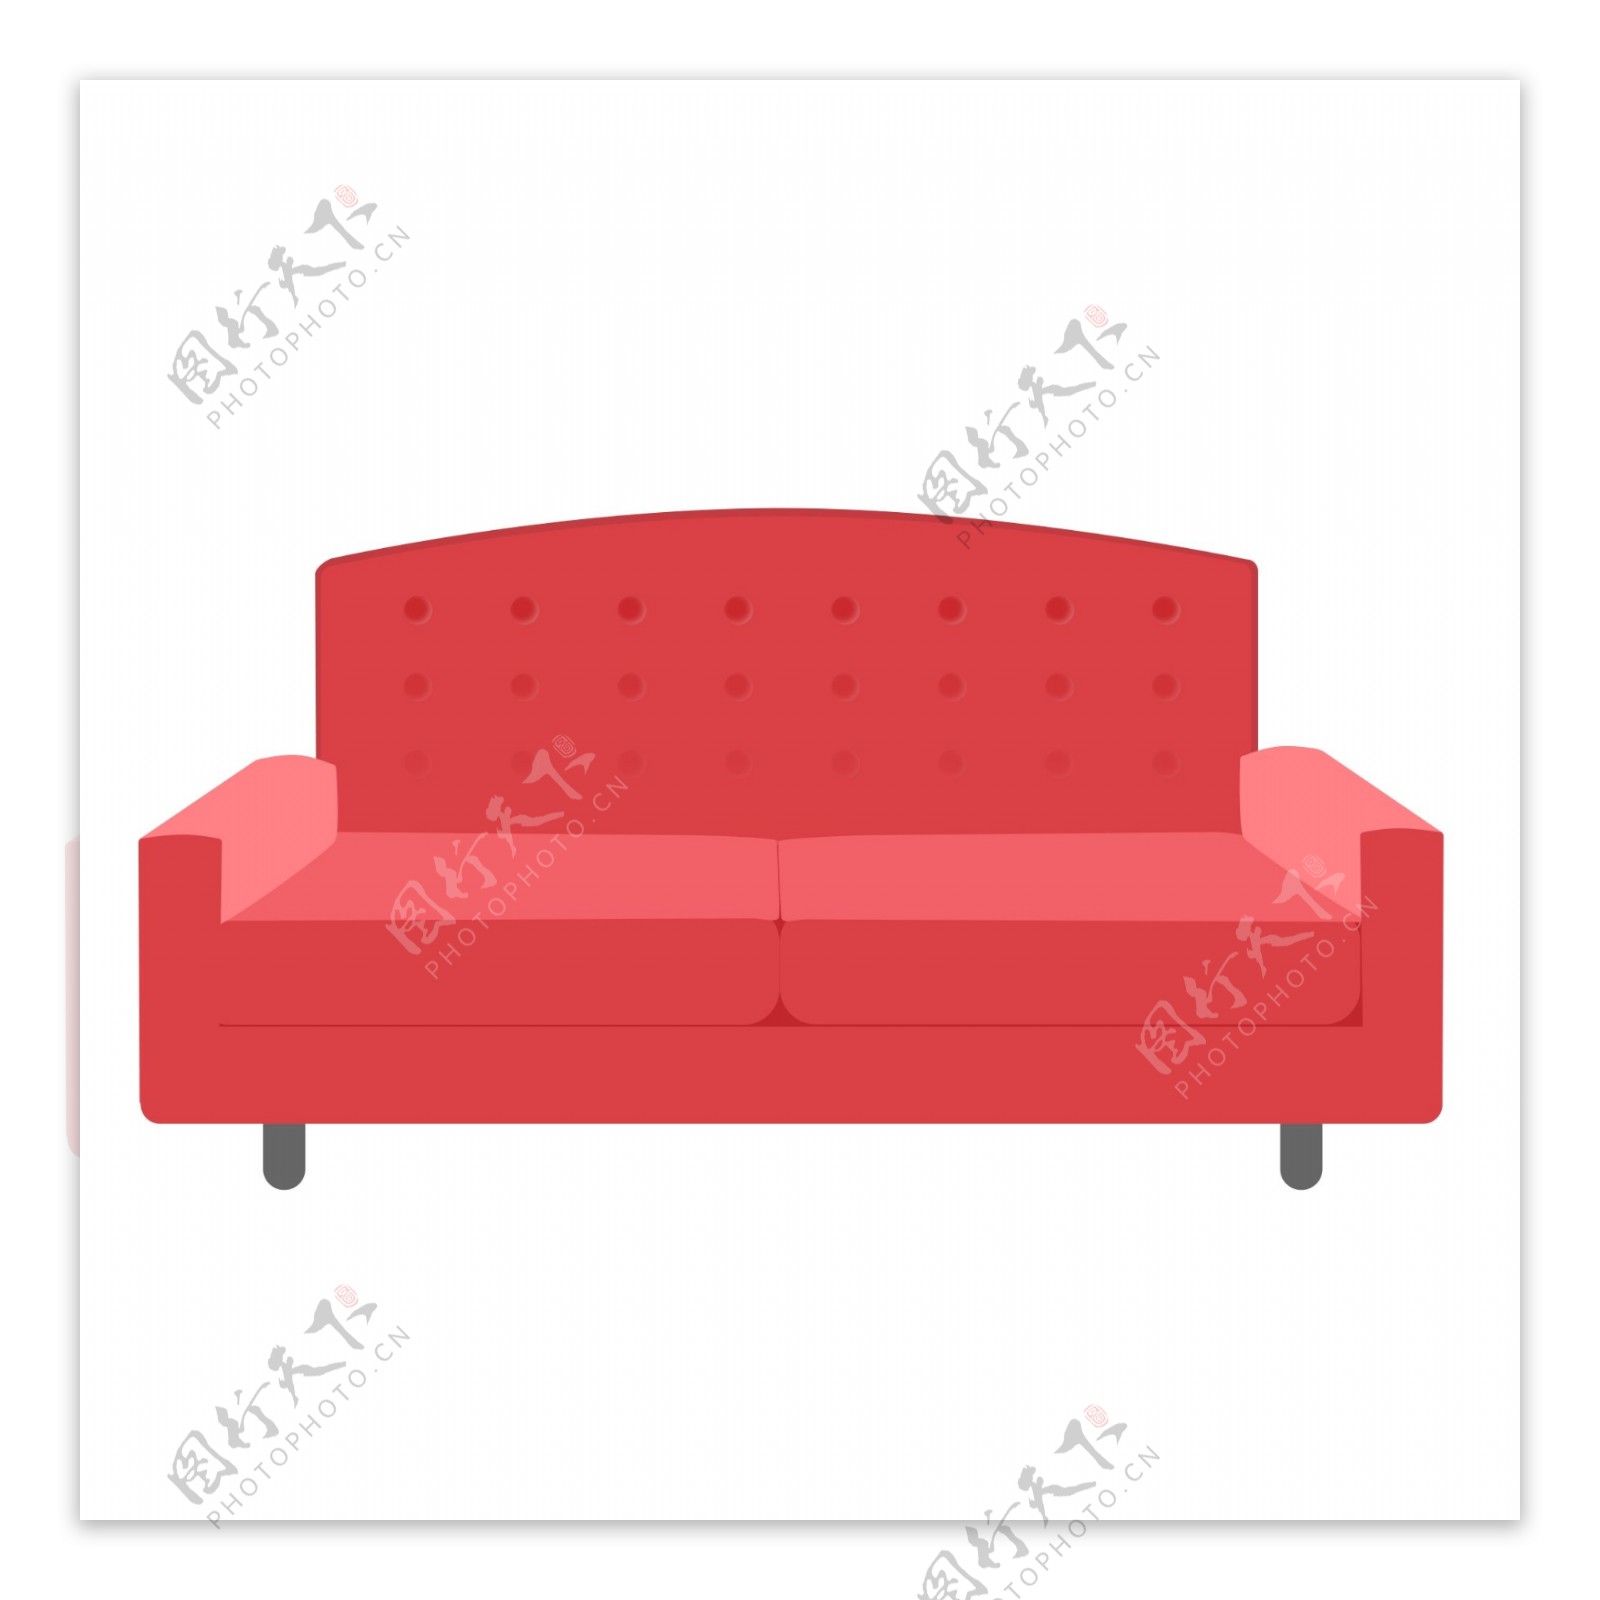 红色大沙发简约设计